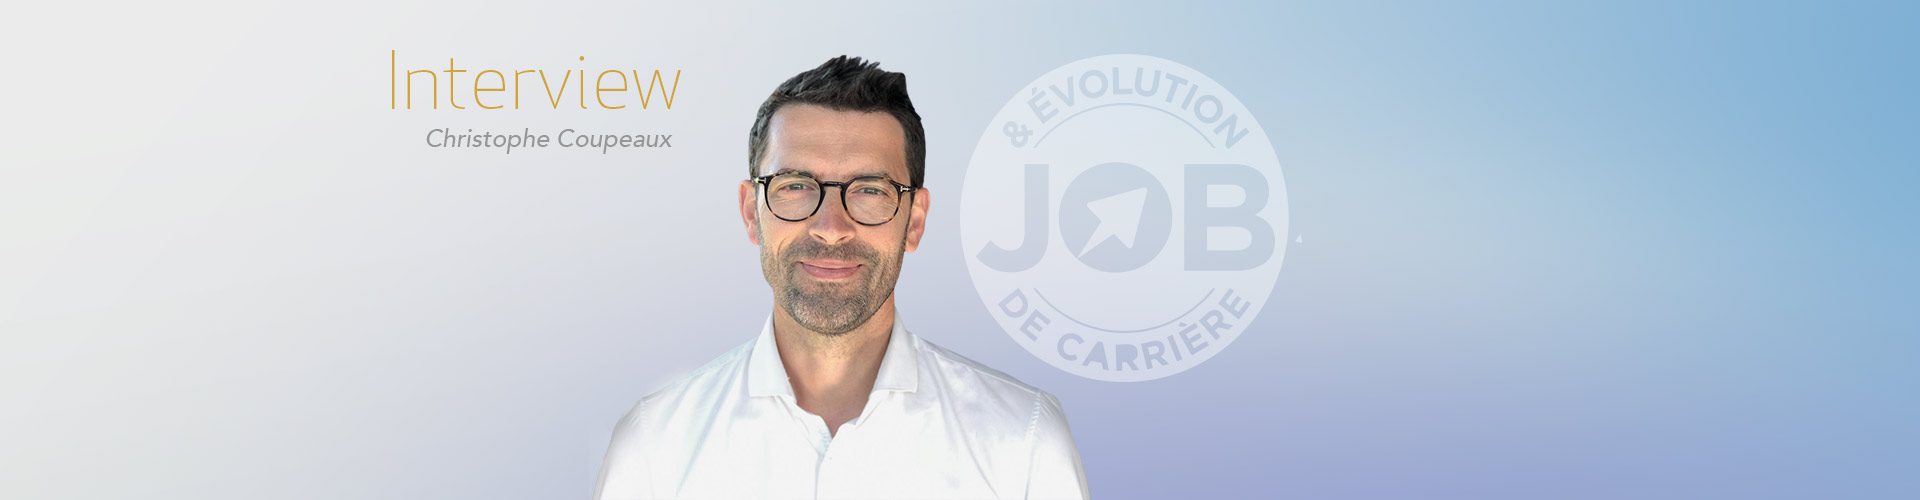 Trouver un emploi grâce à LinkedIn  Interview de Christophe Coupeaux